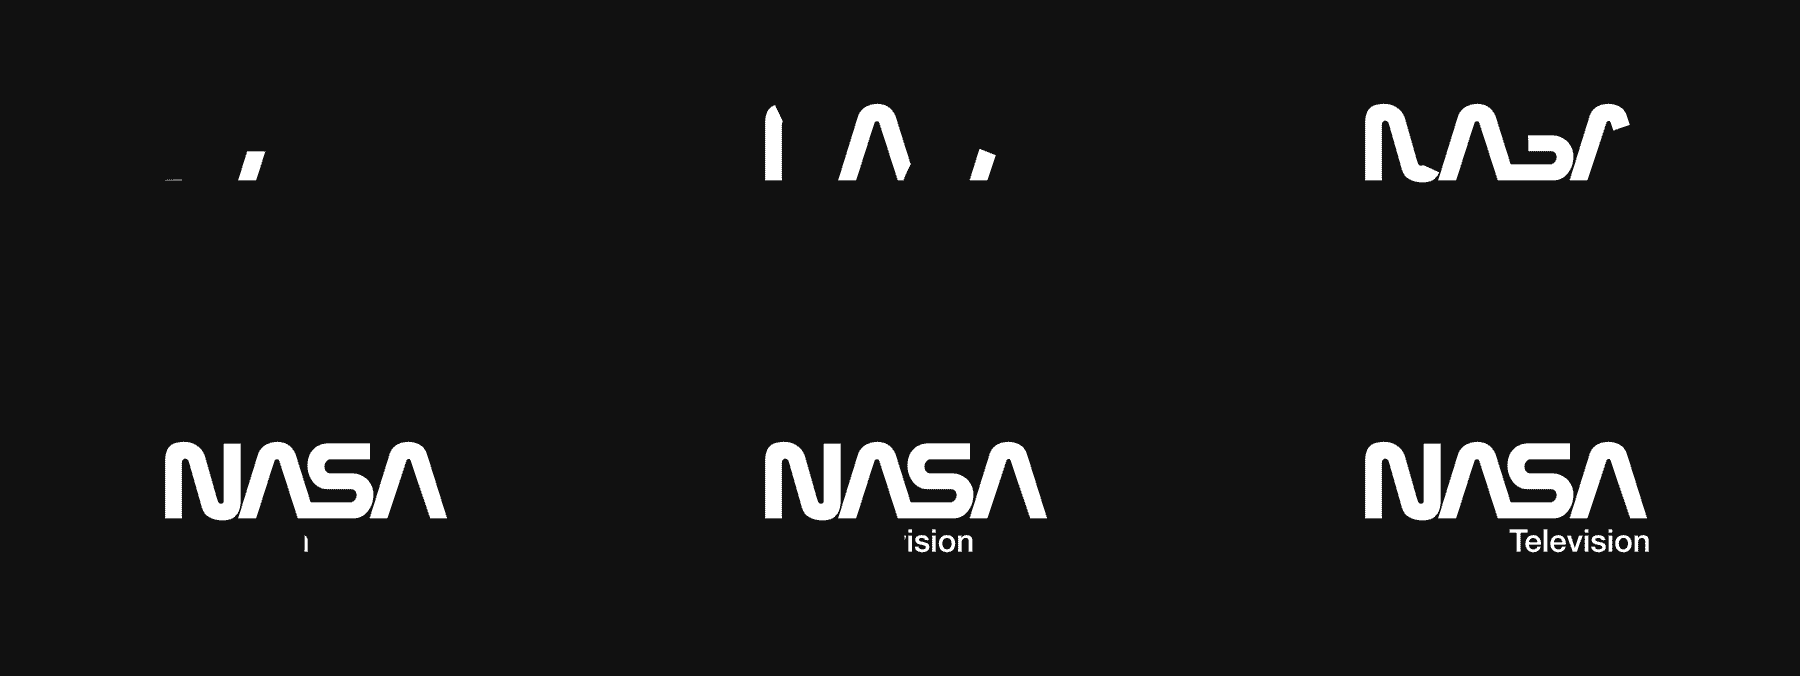 nasa logo build